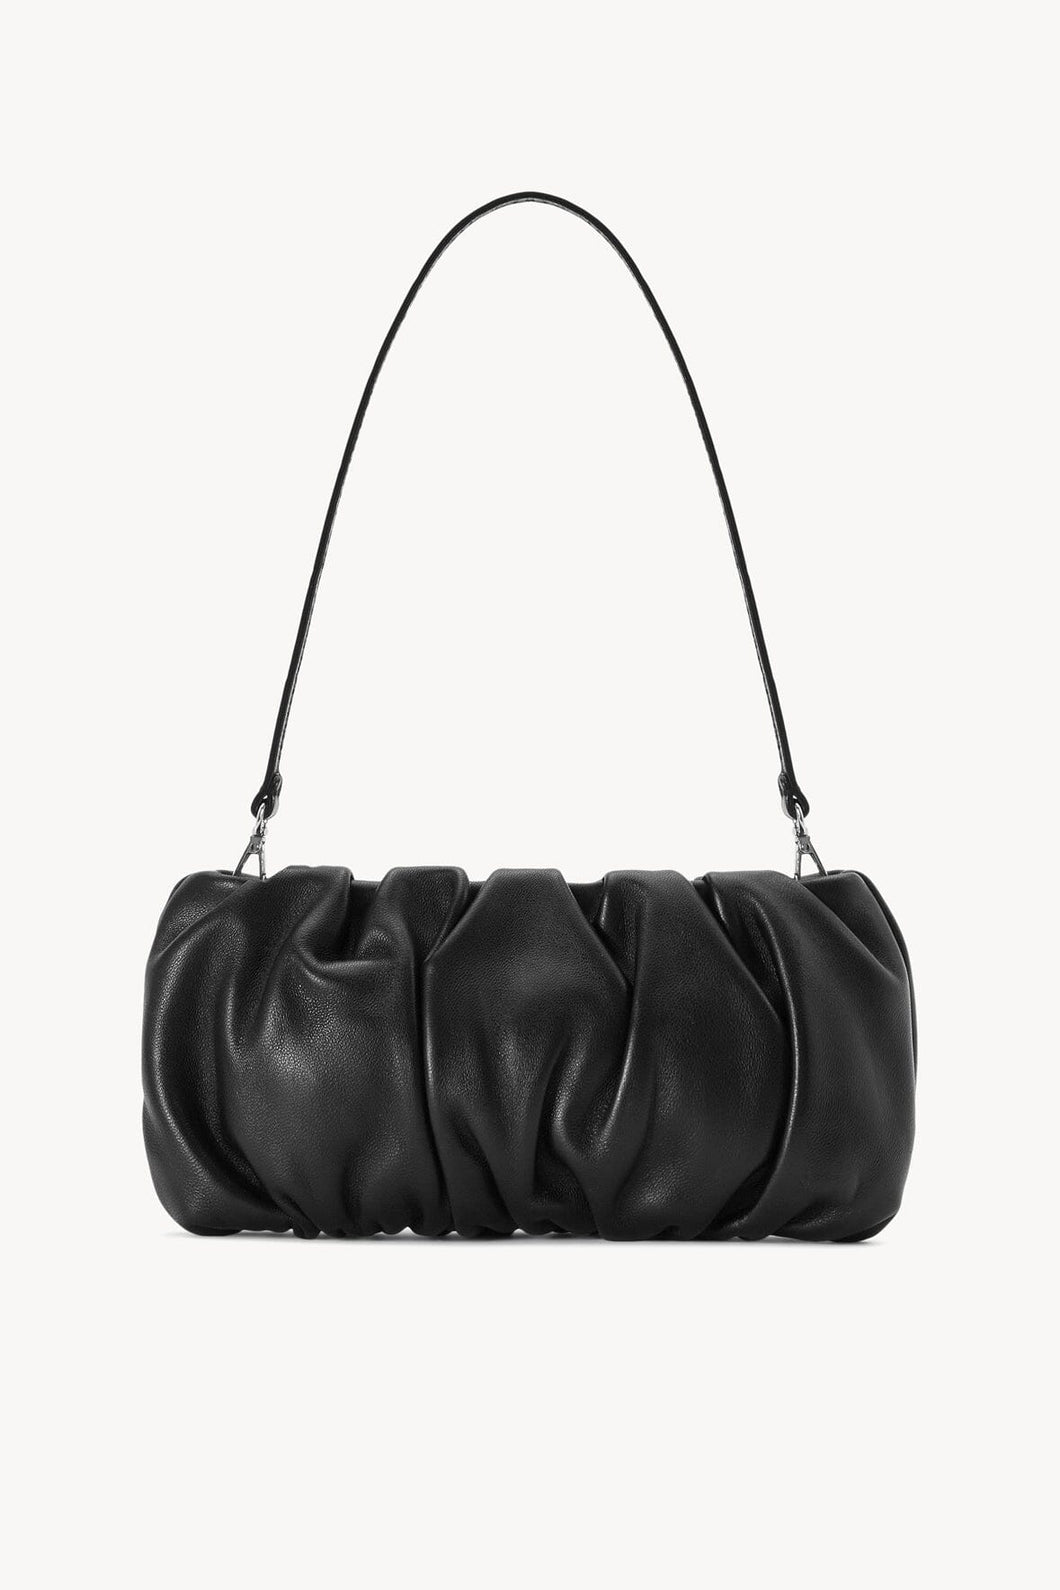 Staud - Black Bean Convertible Bag